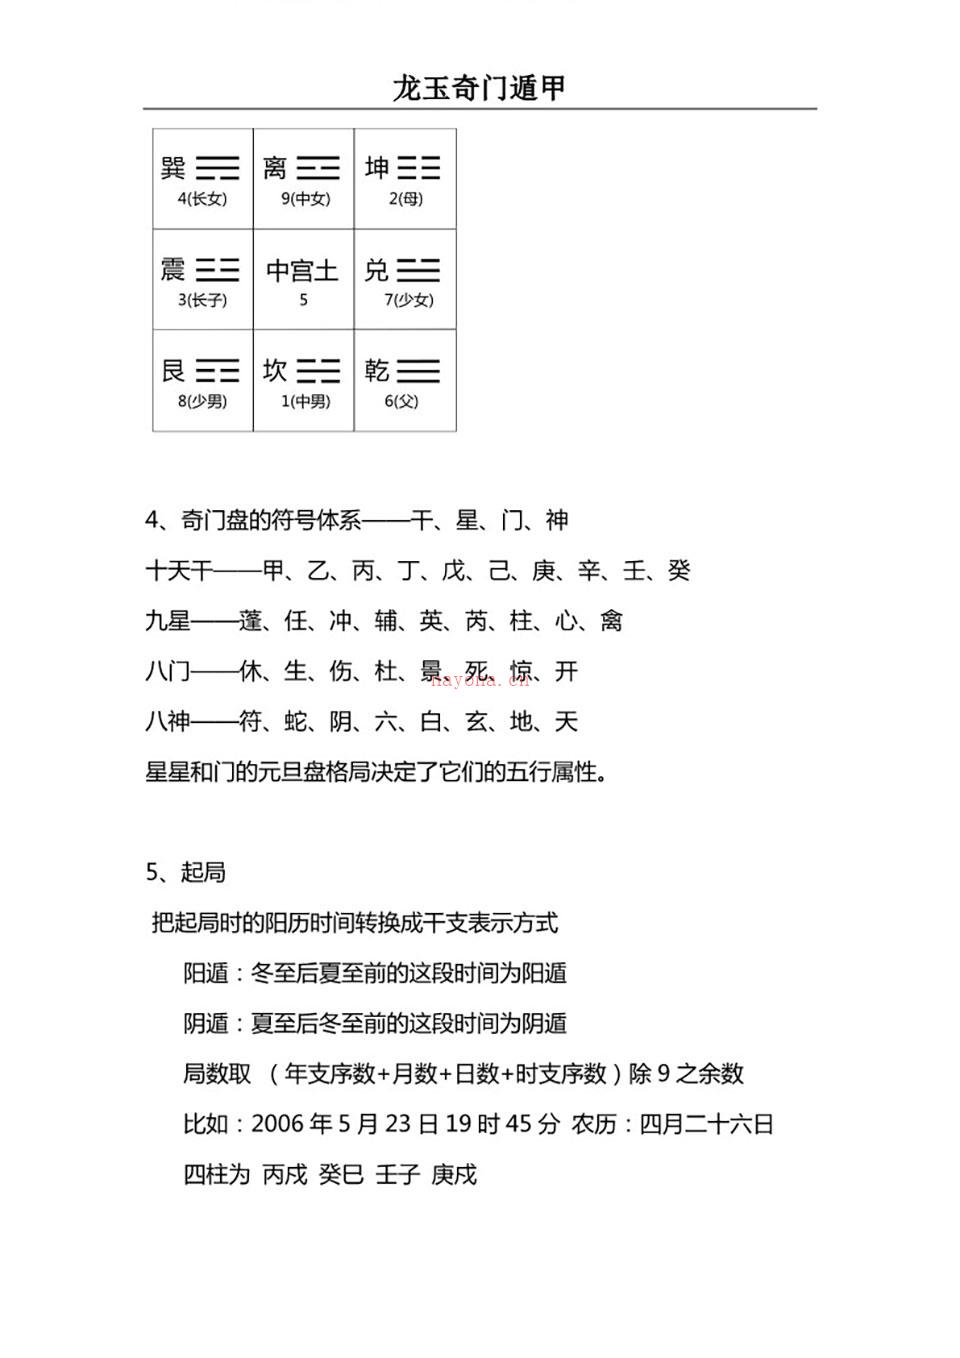 2017年12月龙玉阴盘奇门遁甲教学讲义.pdf 百度网盘资源